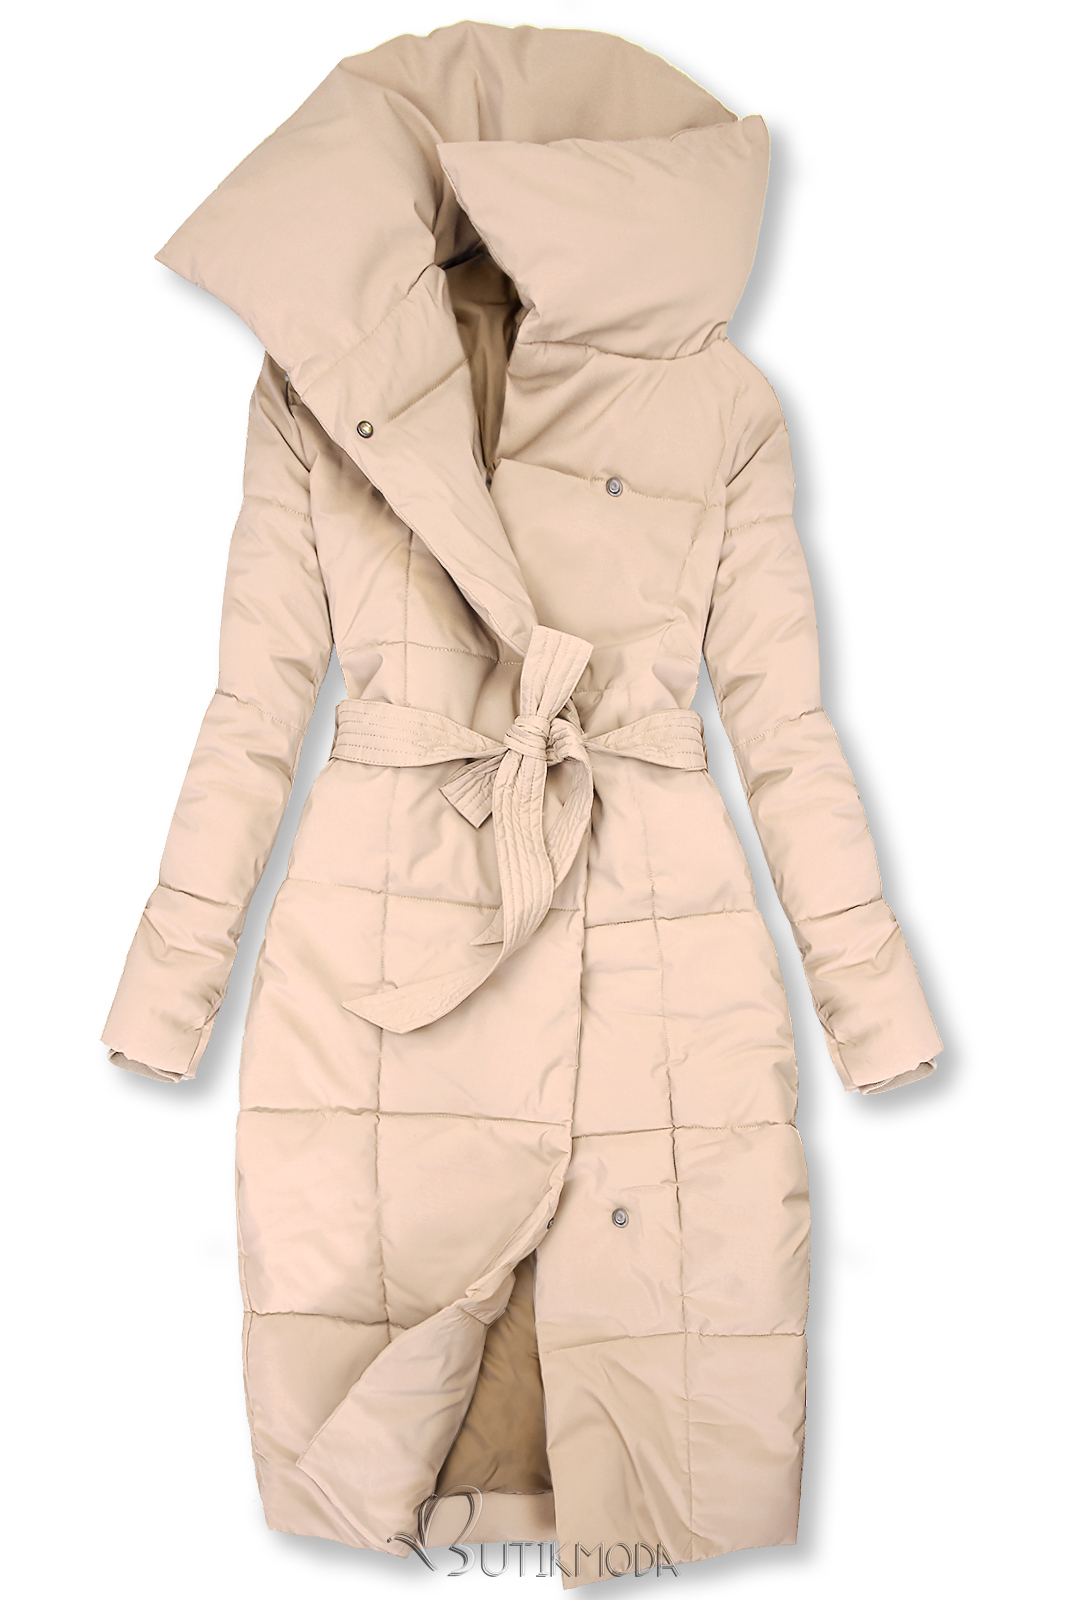 Bézsszínű steppelt téli kabát övvel